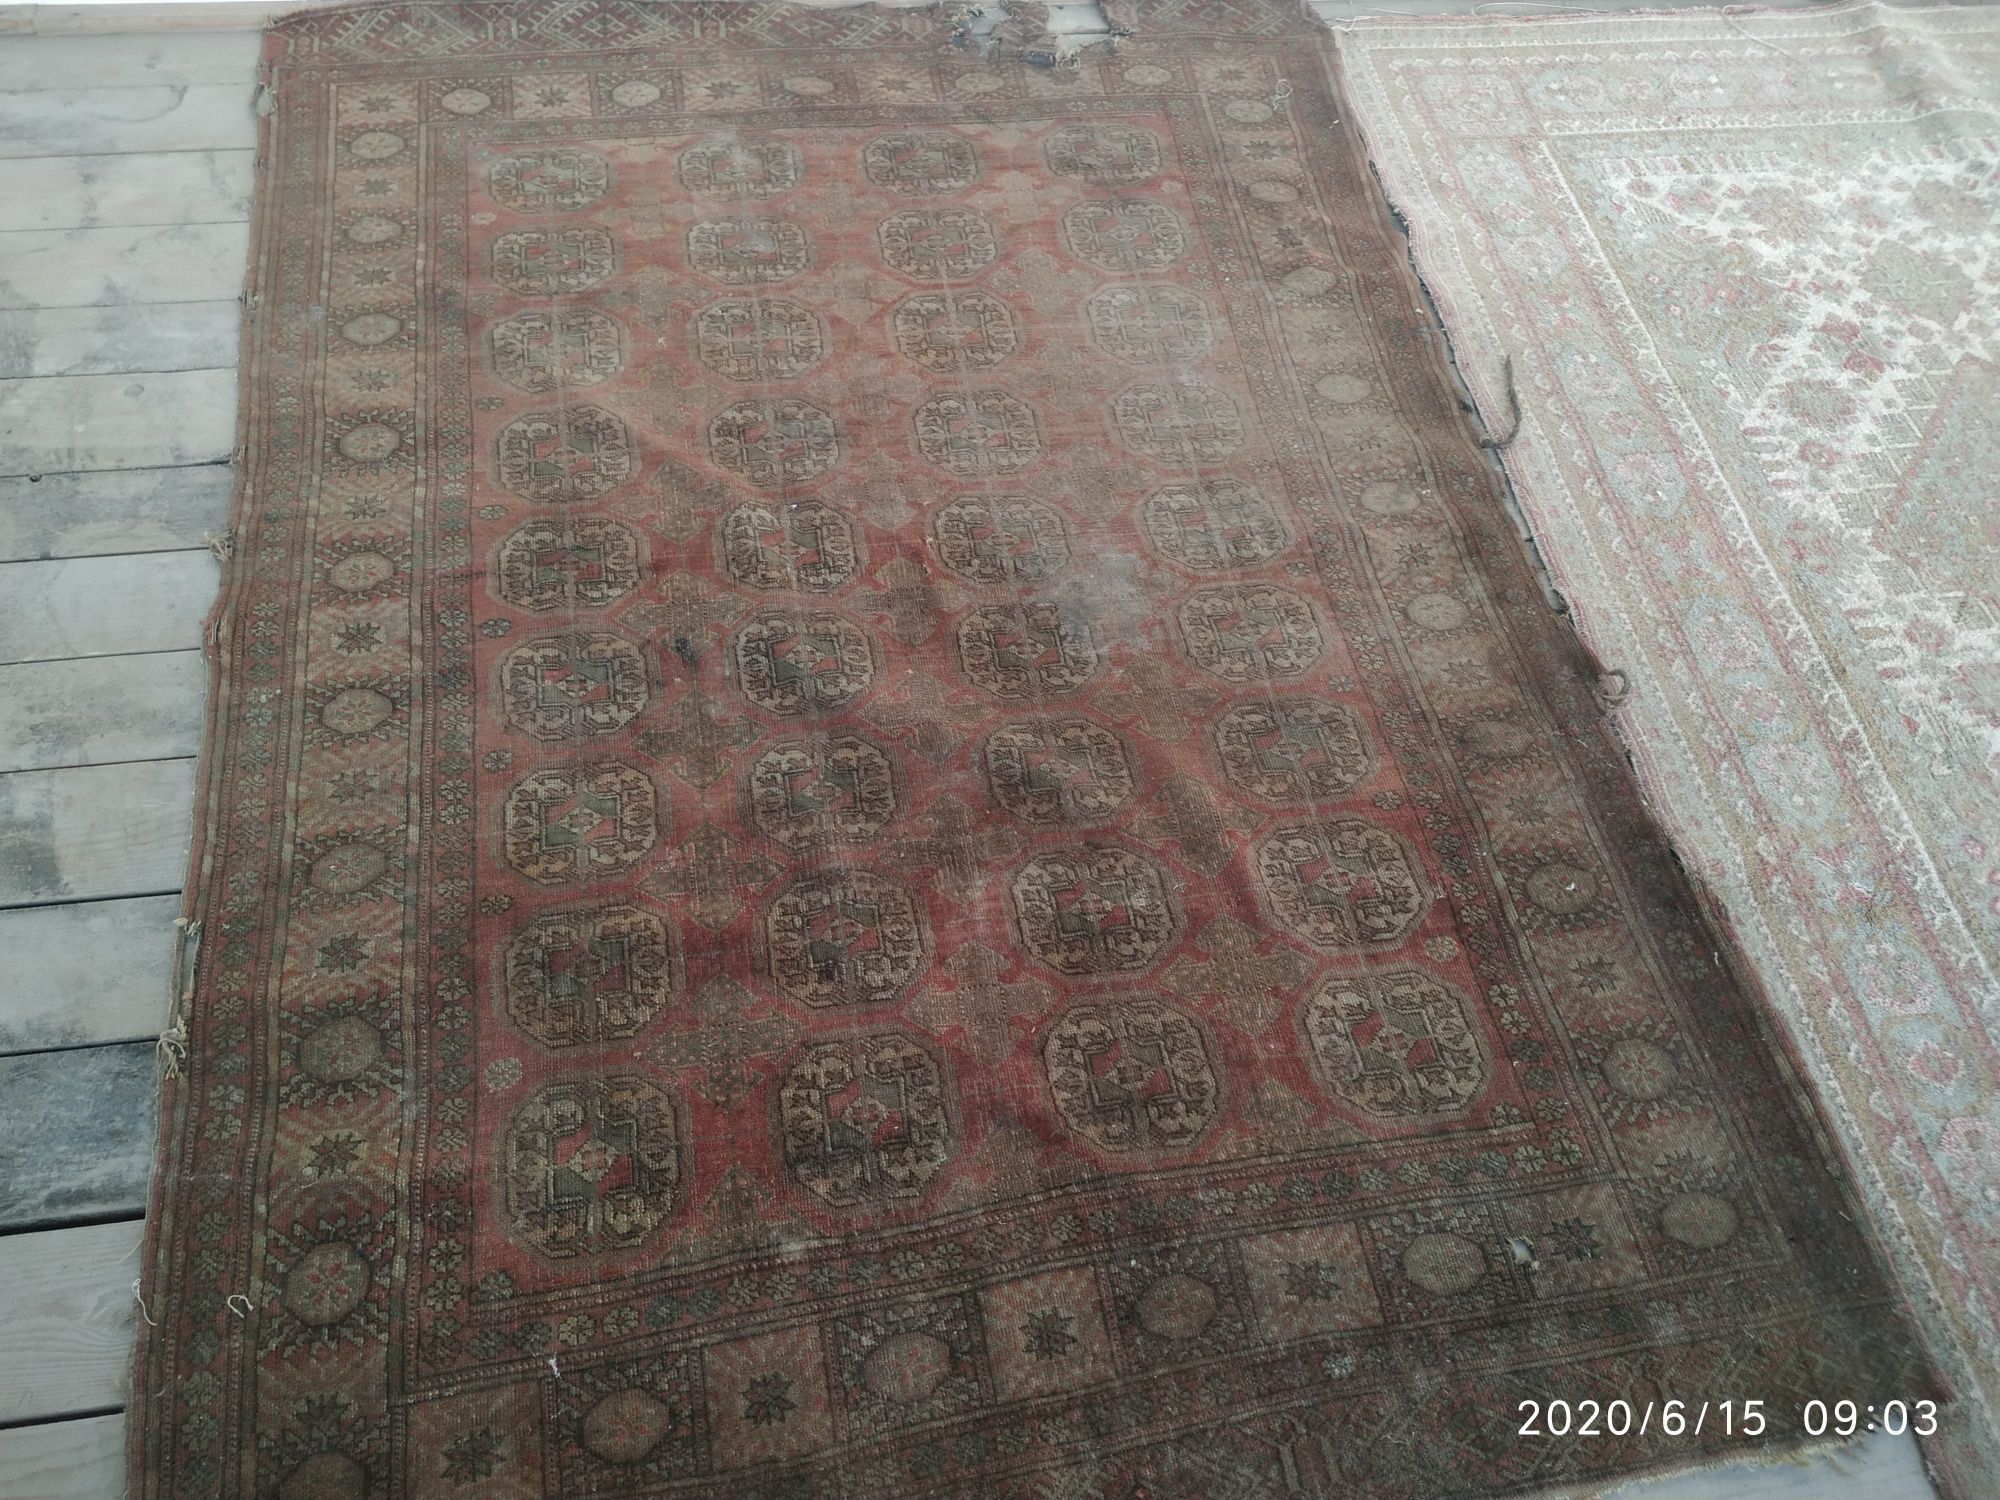 Антиквариат 100летный туркменский ковёр из чистого шерста,  рукоделие